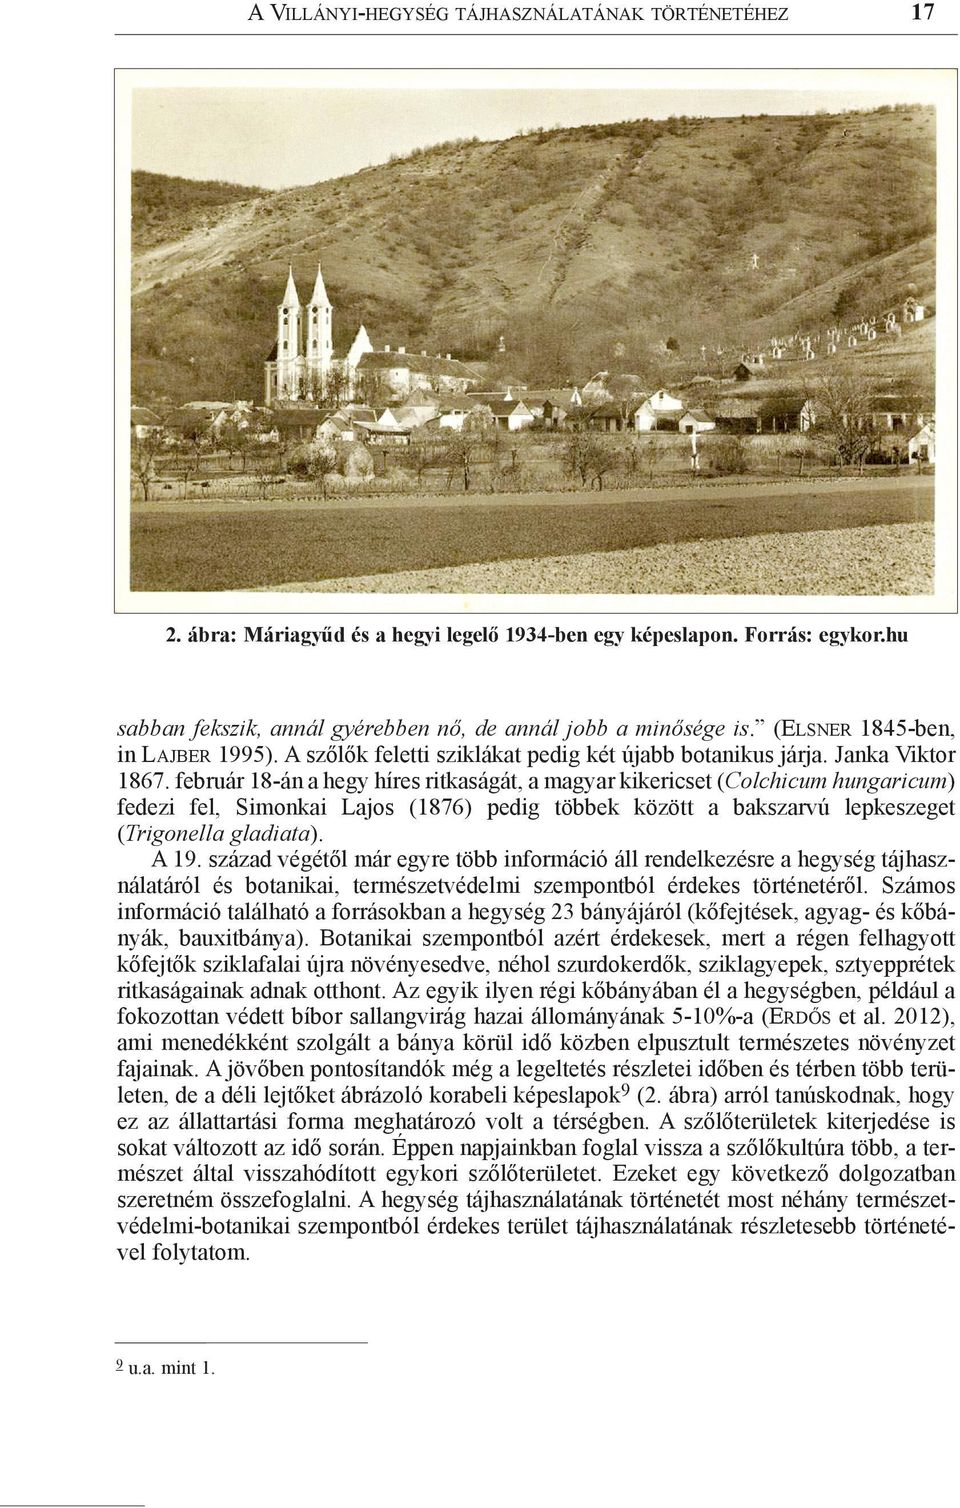 február 18-án a hegy híres ritkaságát, a magyar kikericset (Colchicum hungaricum) fedezi fel, Simonkai Lajos (1876) pedig többek között a bakszarvú lepkeszeget (Trigonella gladiata). A 19.